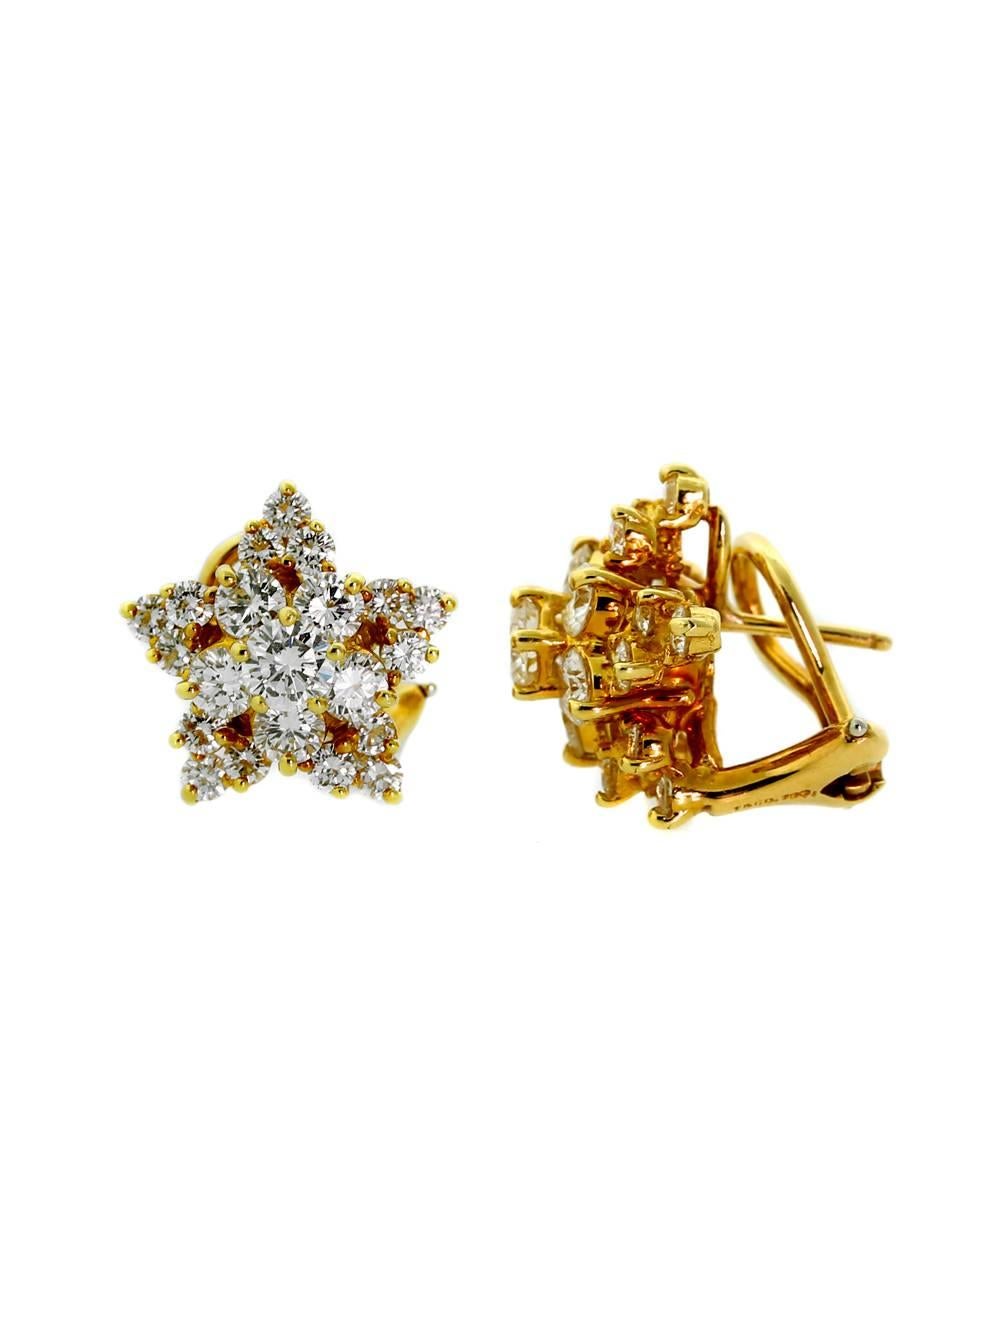 Ein fabelhaftes Paar authentische Tiffany & Co Diamant-Stern-Ohrringe in 18k Gelbgold gefertigt und mit den feinsten Tiffany & Co Vs Qualität Diamanten 3cts geschmückt.

Abmessungen: 16mm im Durchmesser (.62″)

Inventar-ID: 0000002